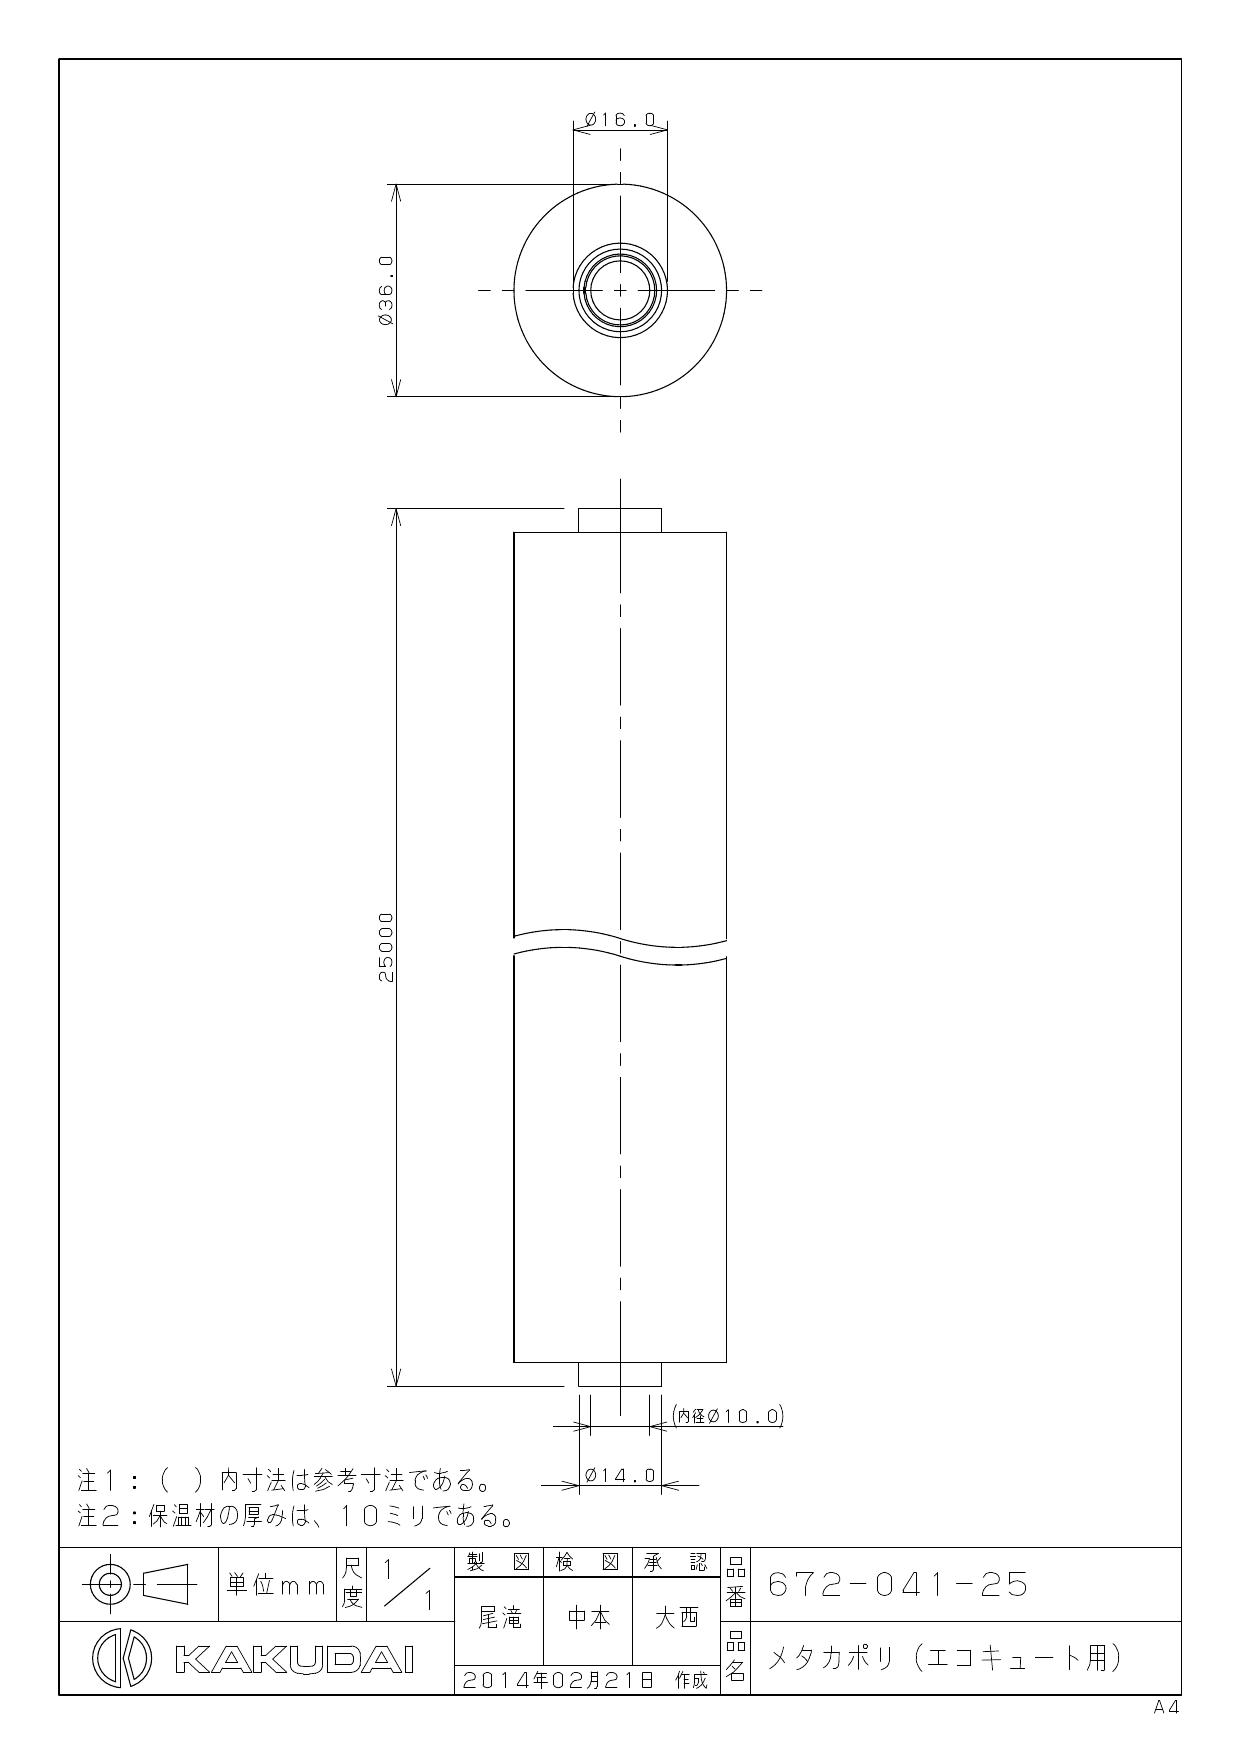 カクダイ メタカポリエコキュートセット(20ミリ保温) 10 KAKUDAI - 1